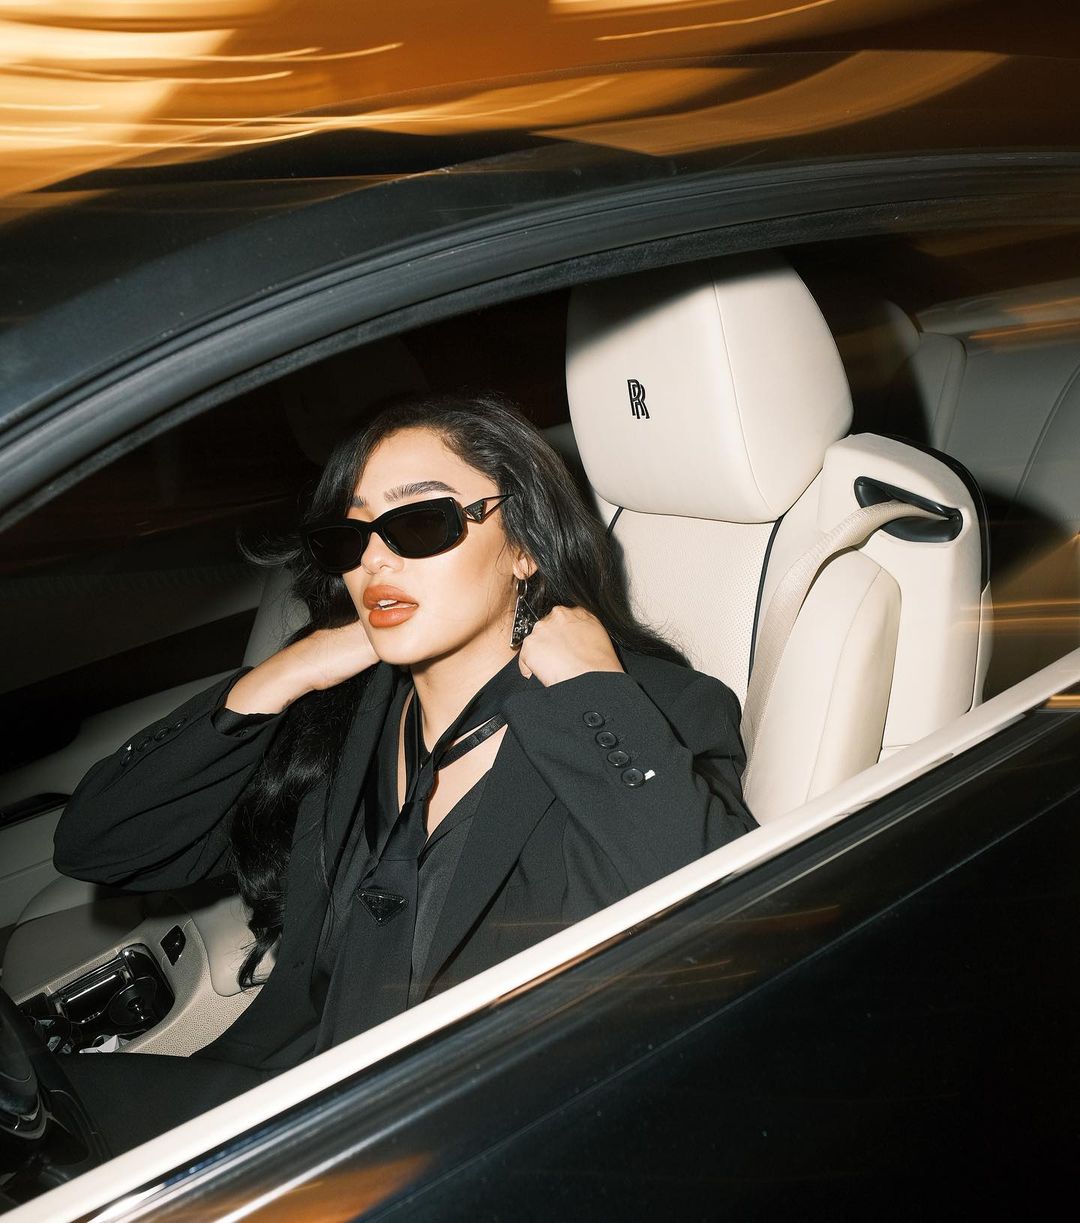 Andrea Brillantes' Designer Sunglasses Collection | Preview.ph